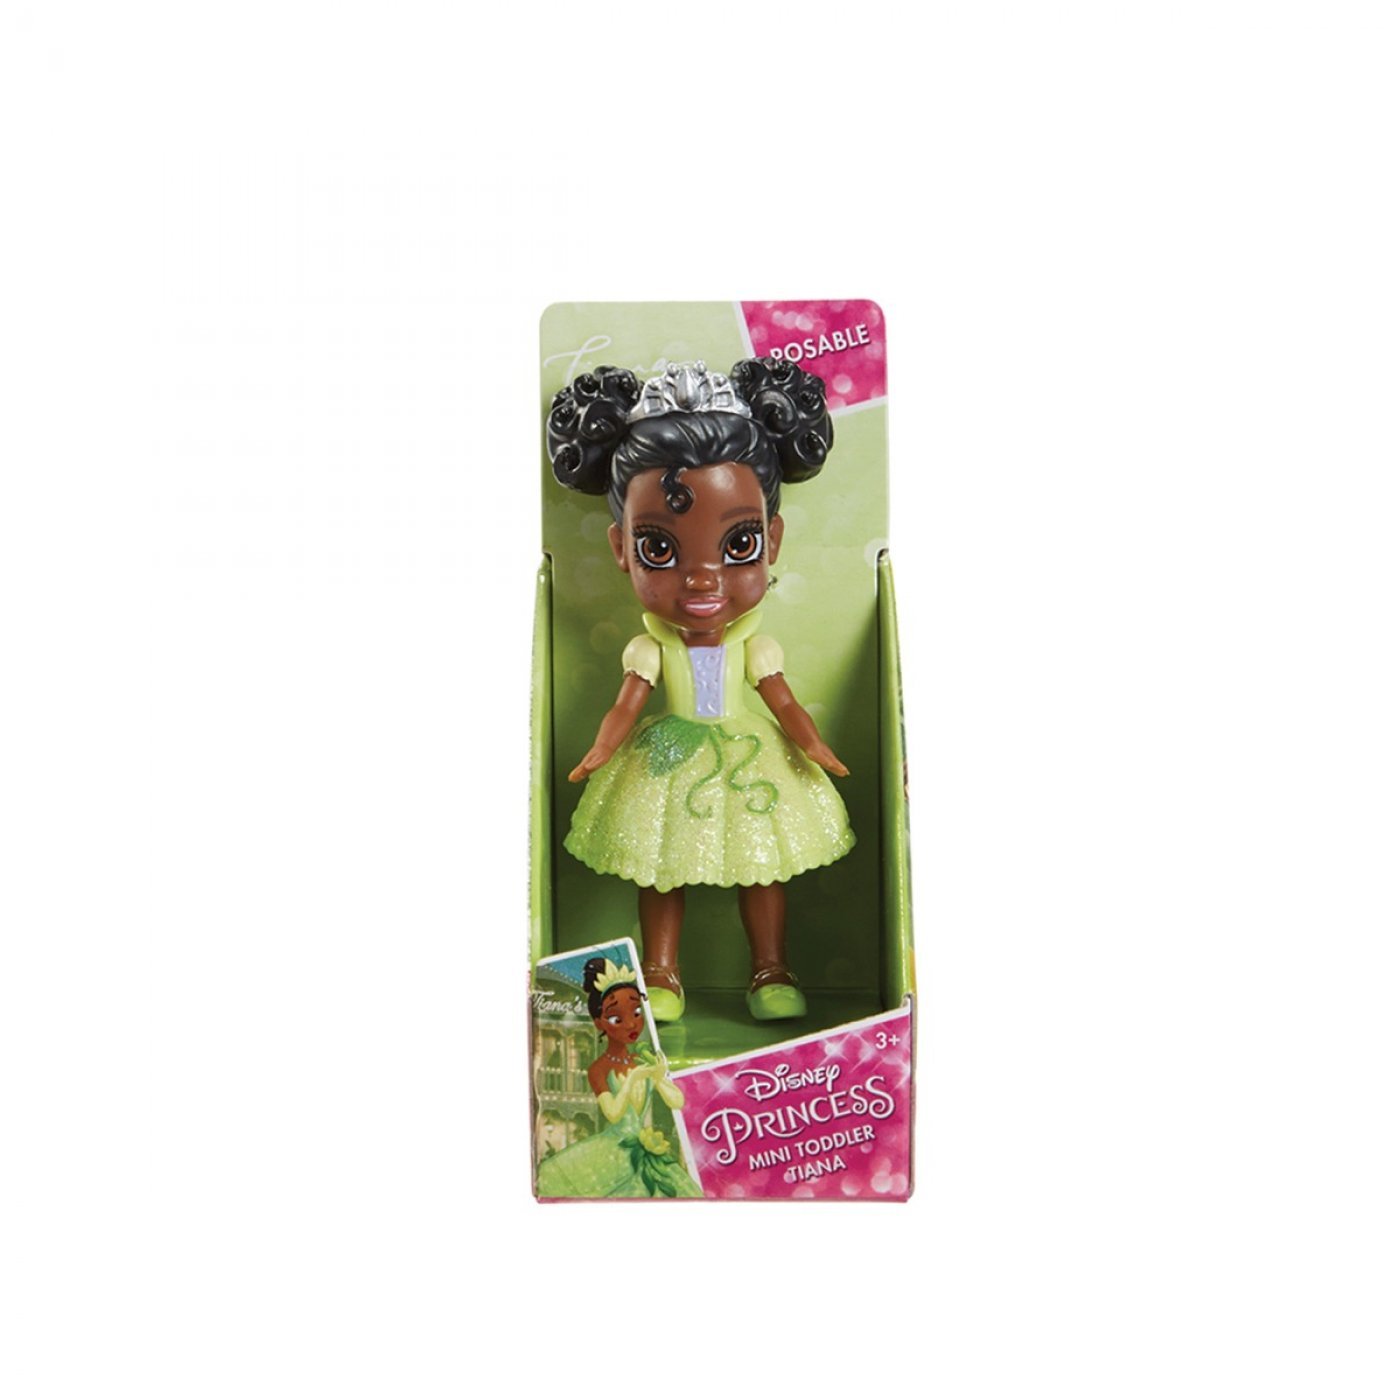 Disney princess Mini Toddler - Tiana